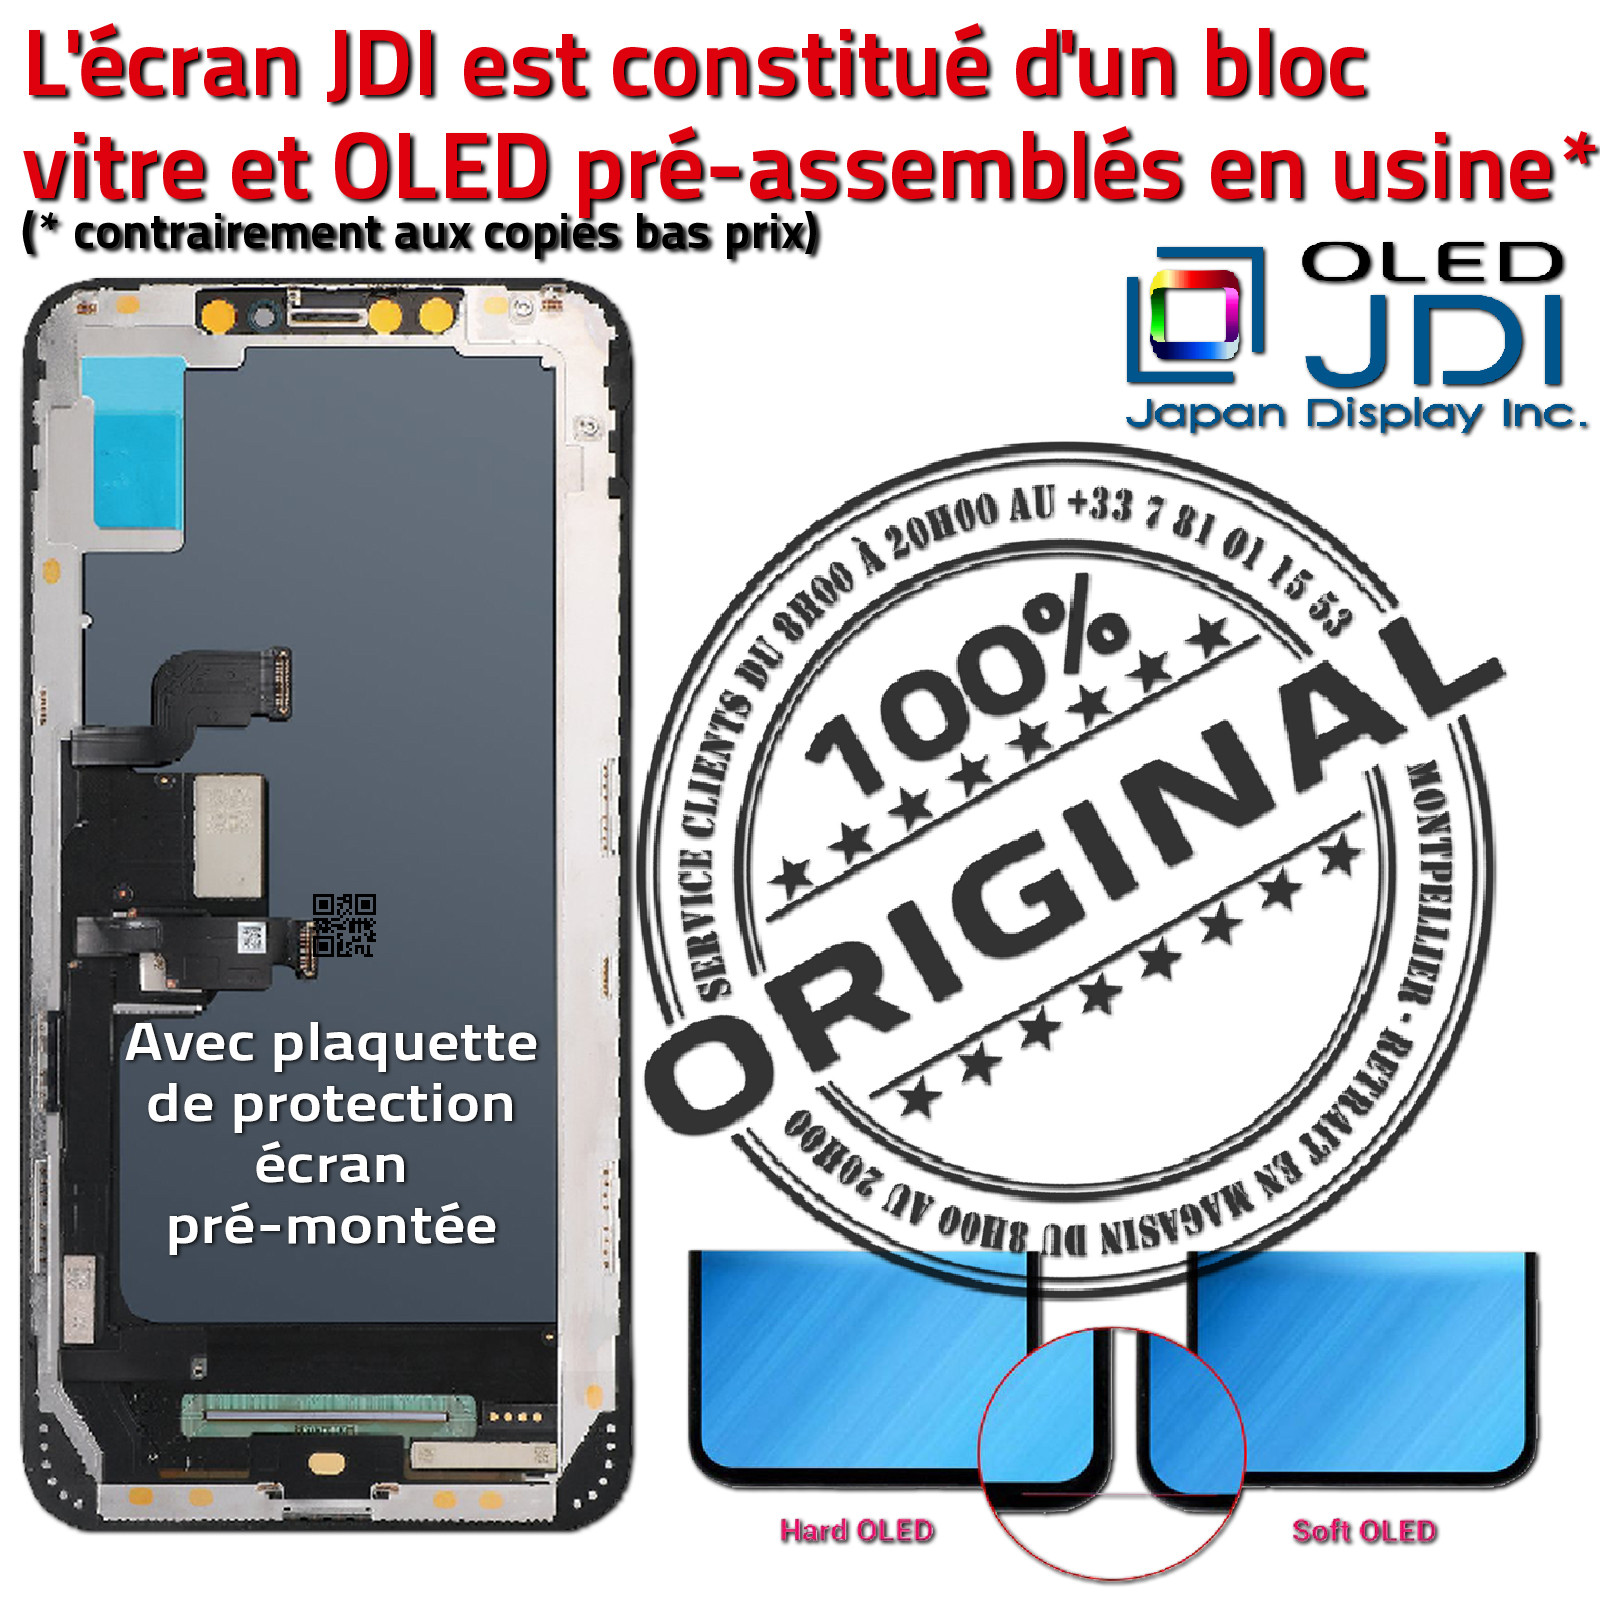 HDR ORIGINAL Verre Tactile soft OLED iPhone XS MAX iTruColor Qualité SmartPhone 3D Touch Réparation Écran HD Super Retina 6.5in